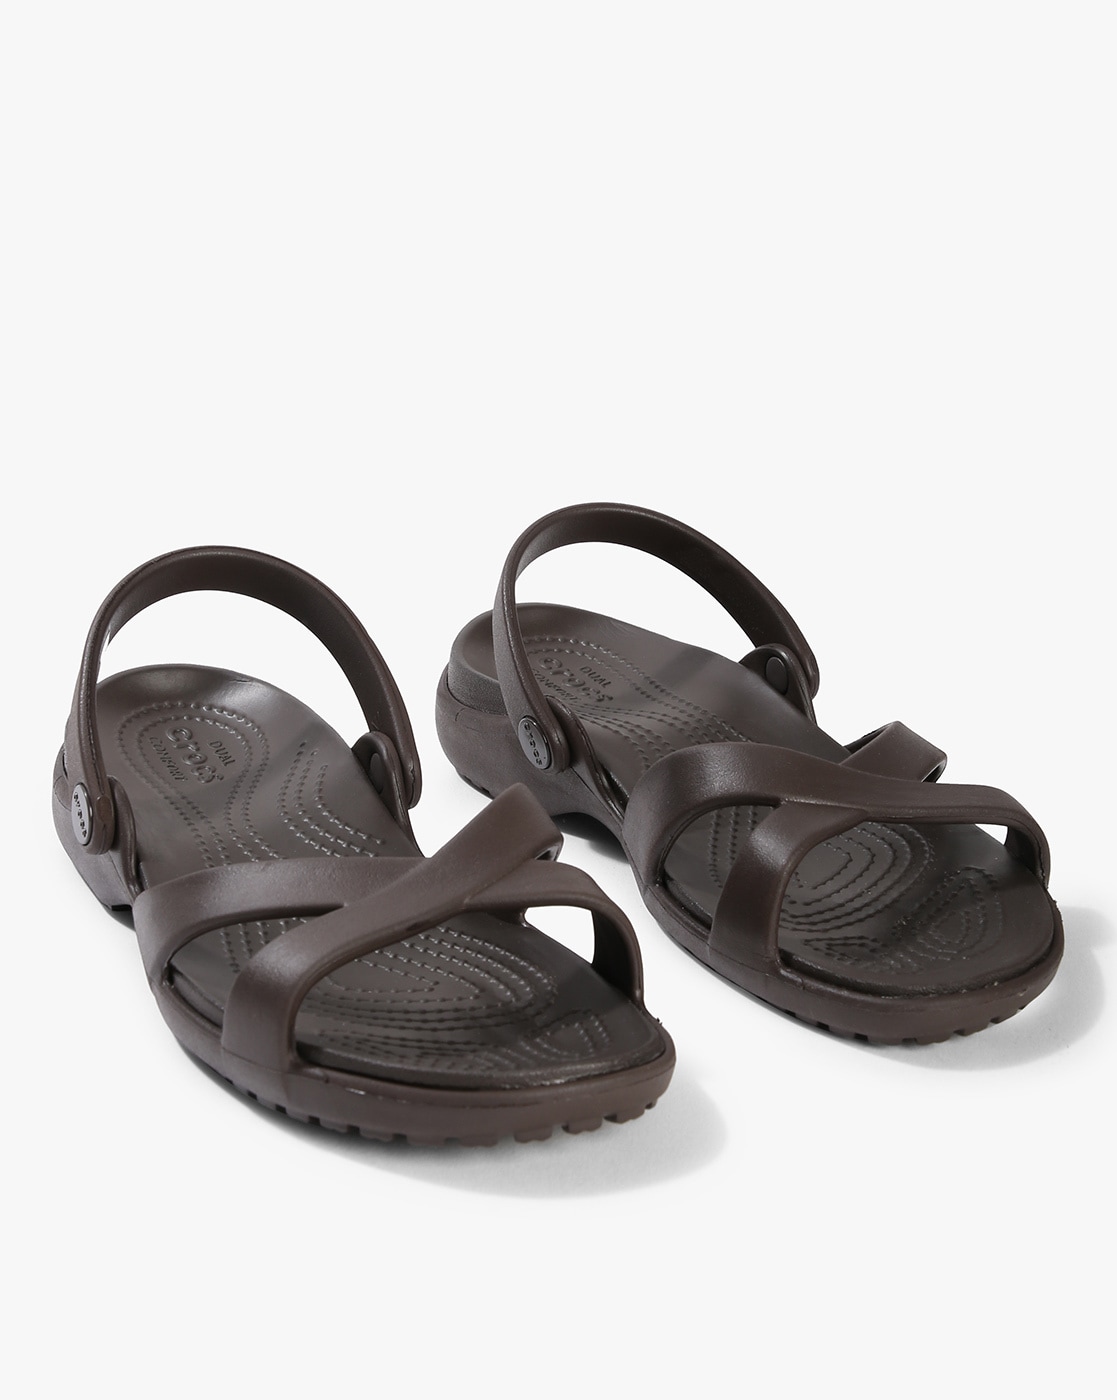 crocs brown sandals